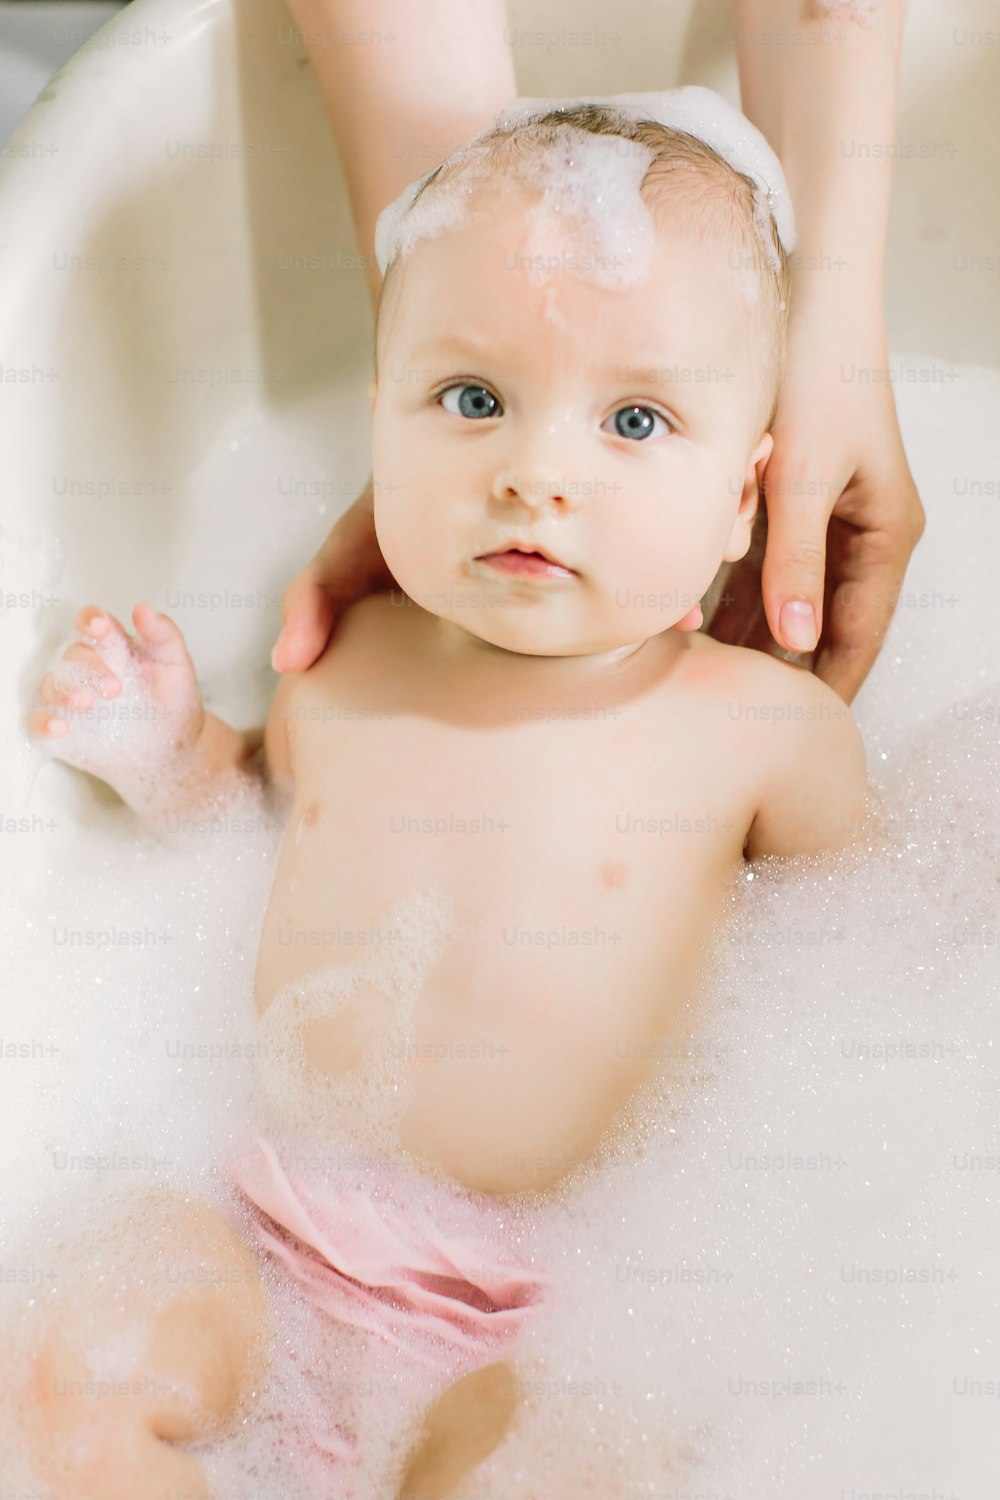 Bebé feliz riendo tomando un baño jugando con burbujas de espuma. Niño pequeño en una bañera. Niño sonriente en el baño con pato de juguete colorido. Lavado y baño de bebés. Higiene y cuidado de los niños pequeños.